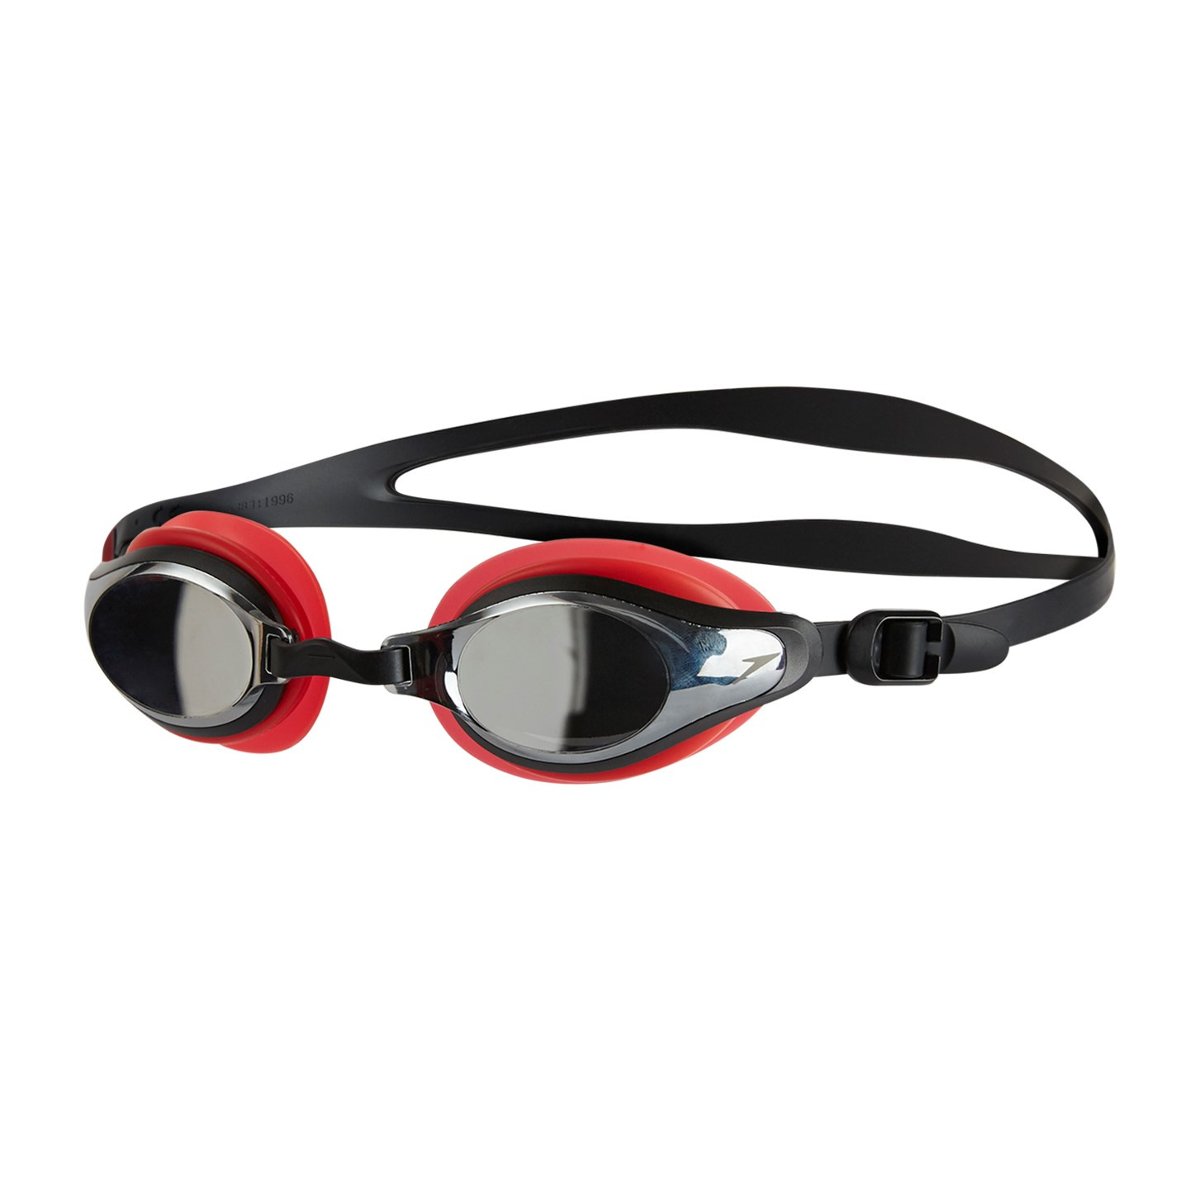 Zdjęcia - Okulary przeciwsłoneczne Speedo Okulary Pływackie 8-11319B990 Mariner Supreme Mirror Red/Black/Chro 